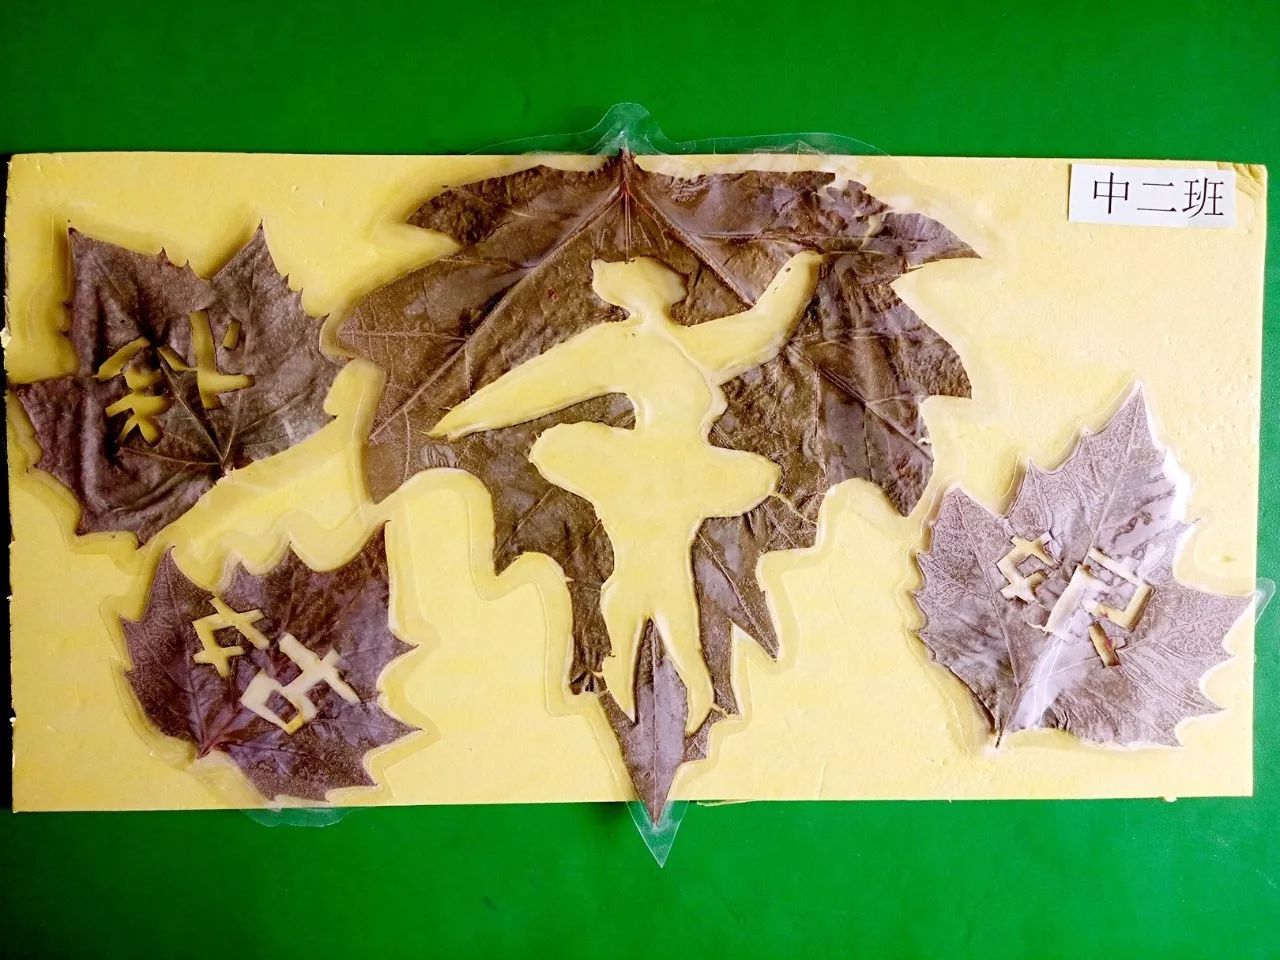 形状,大小等特征的同时,孩子们也掌握了树叶贴画的基本方法